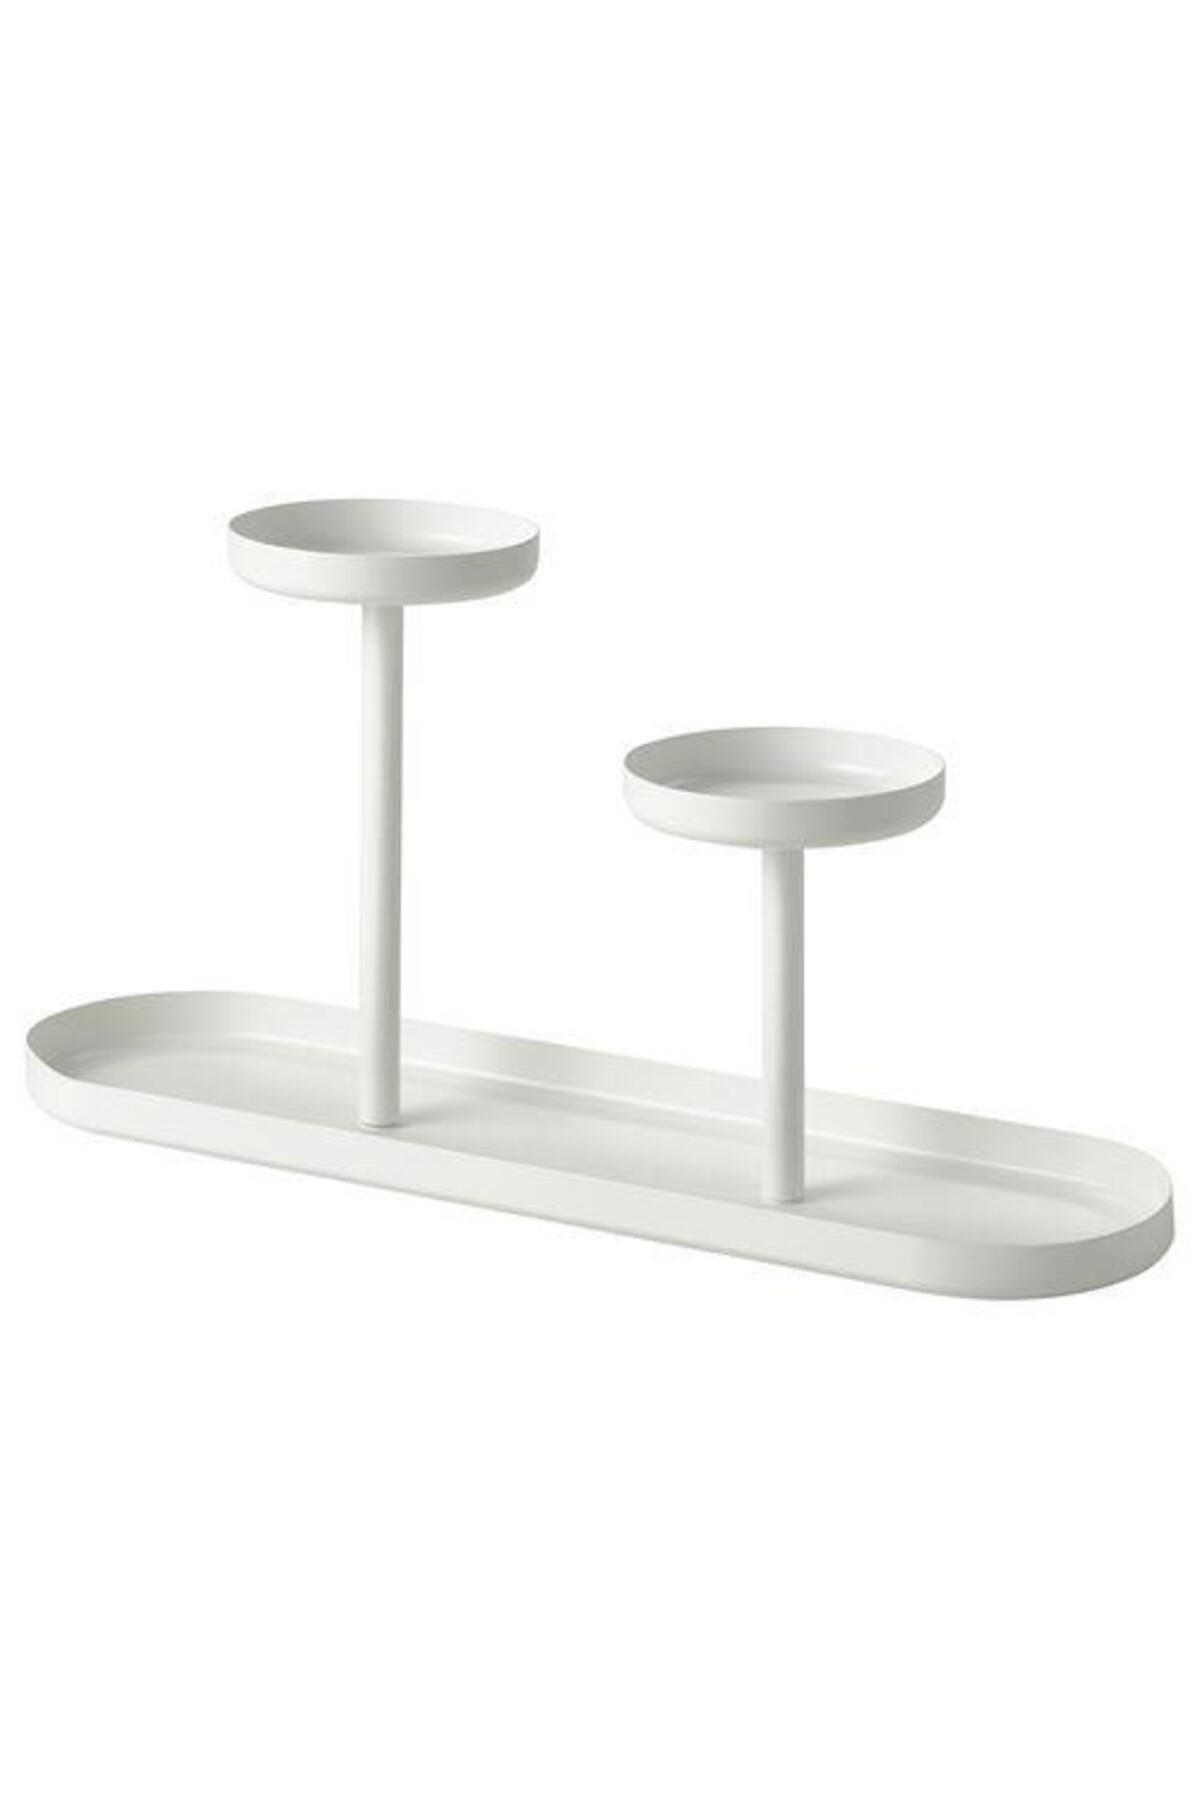 IKEA Metal Çiçeklik-saksılık Beyaz Renk Meridyendukkan 24 Cm Iç Mekana Uygun